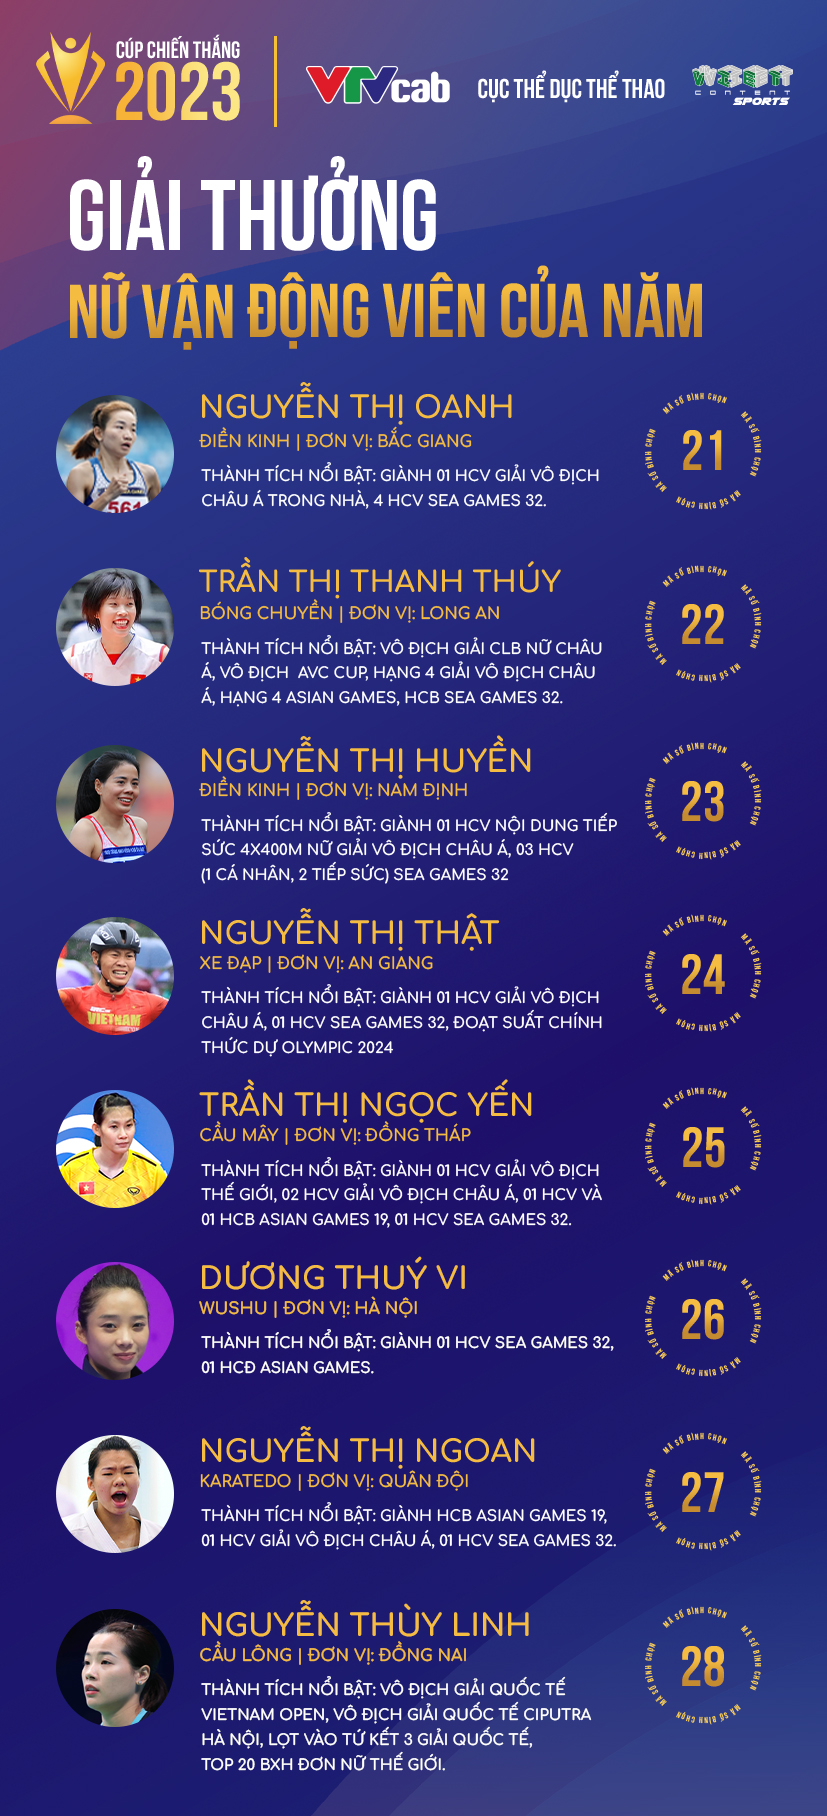 Khởi động bình chọn Cúp Chiến thắng 2023, tôn vinh các tập thể, cá nhân xuất sắc của thể thao Việt Nam ảnh 1